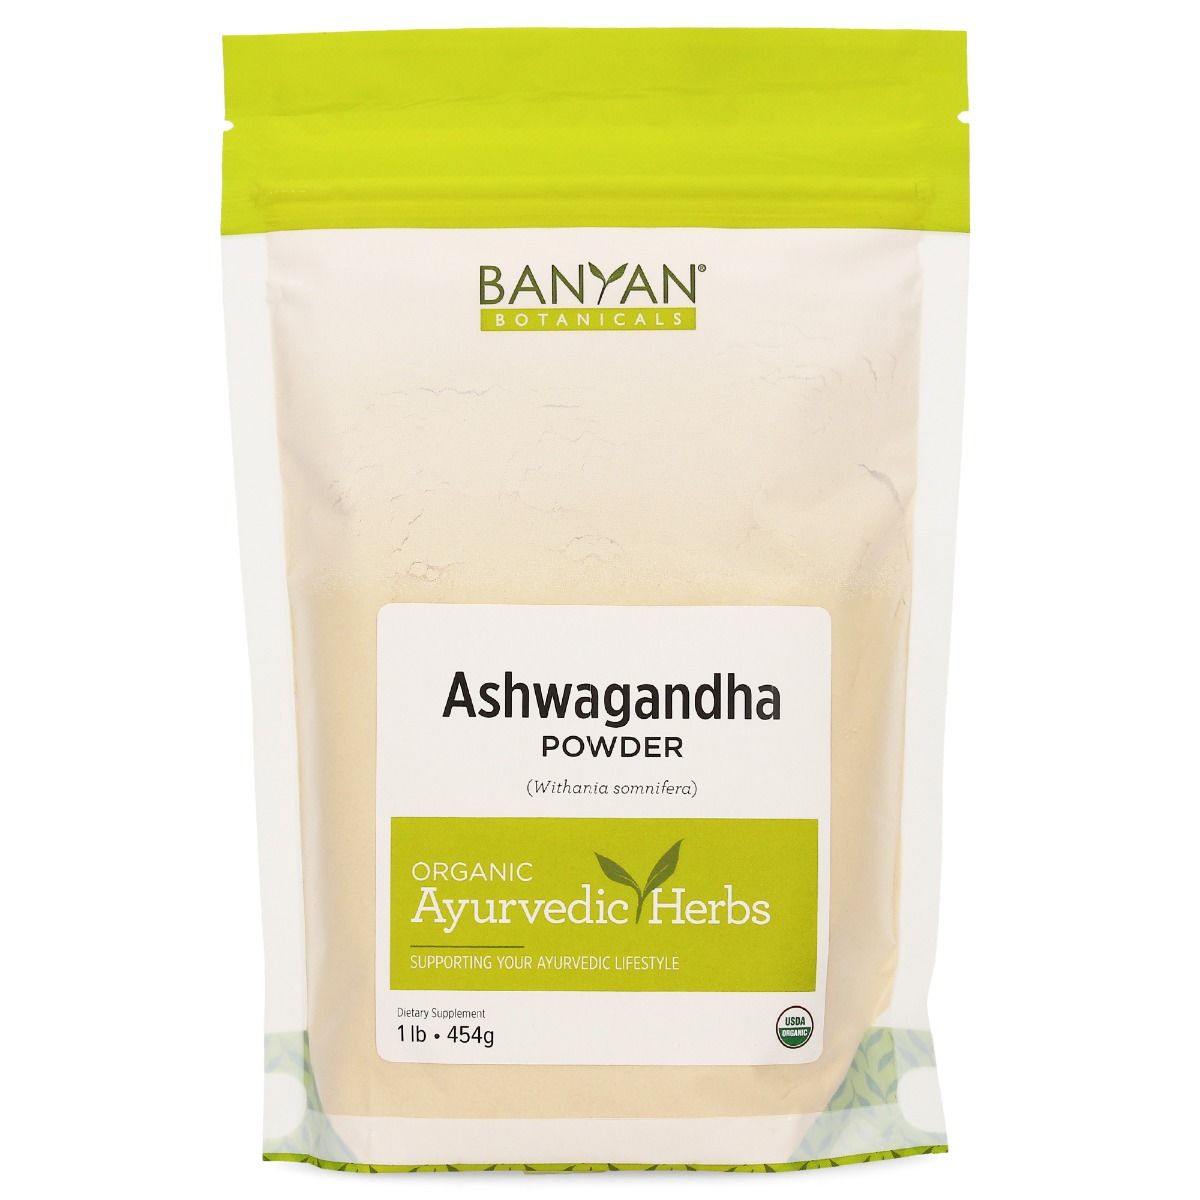 ashwagandha powder - certified organic